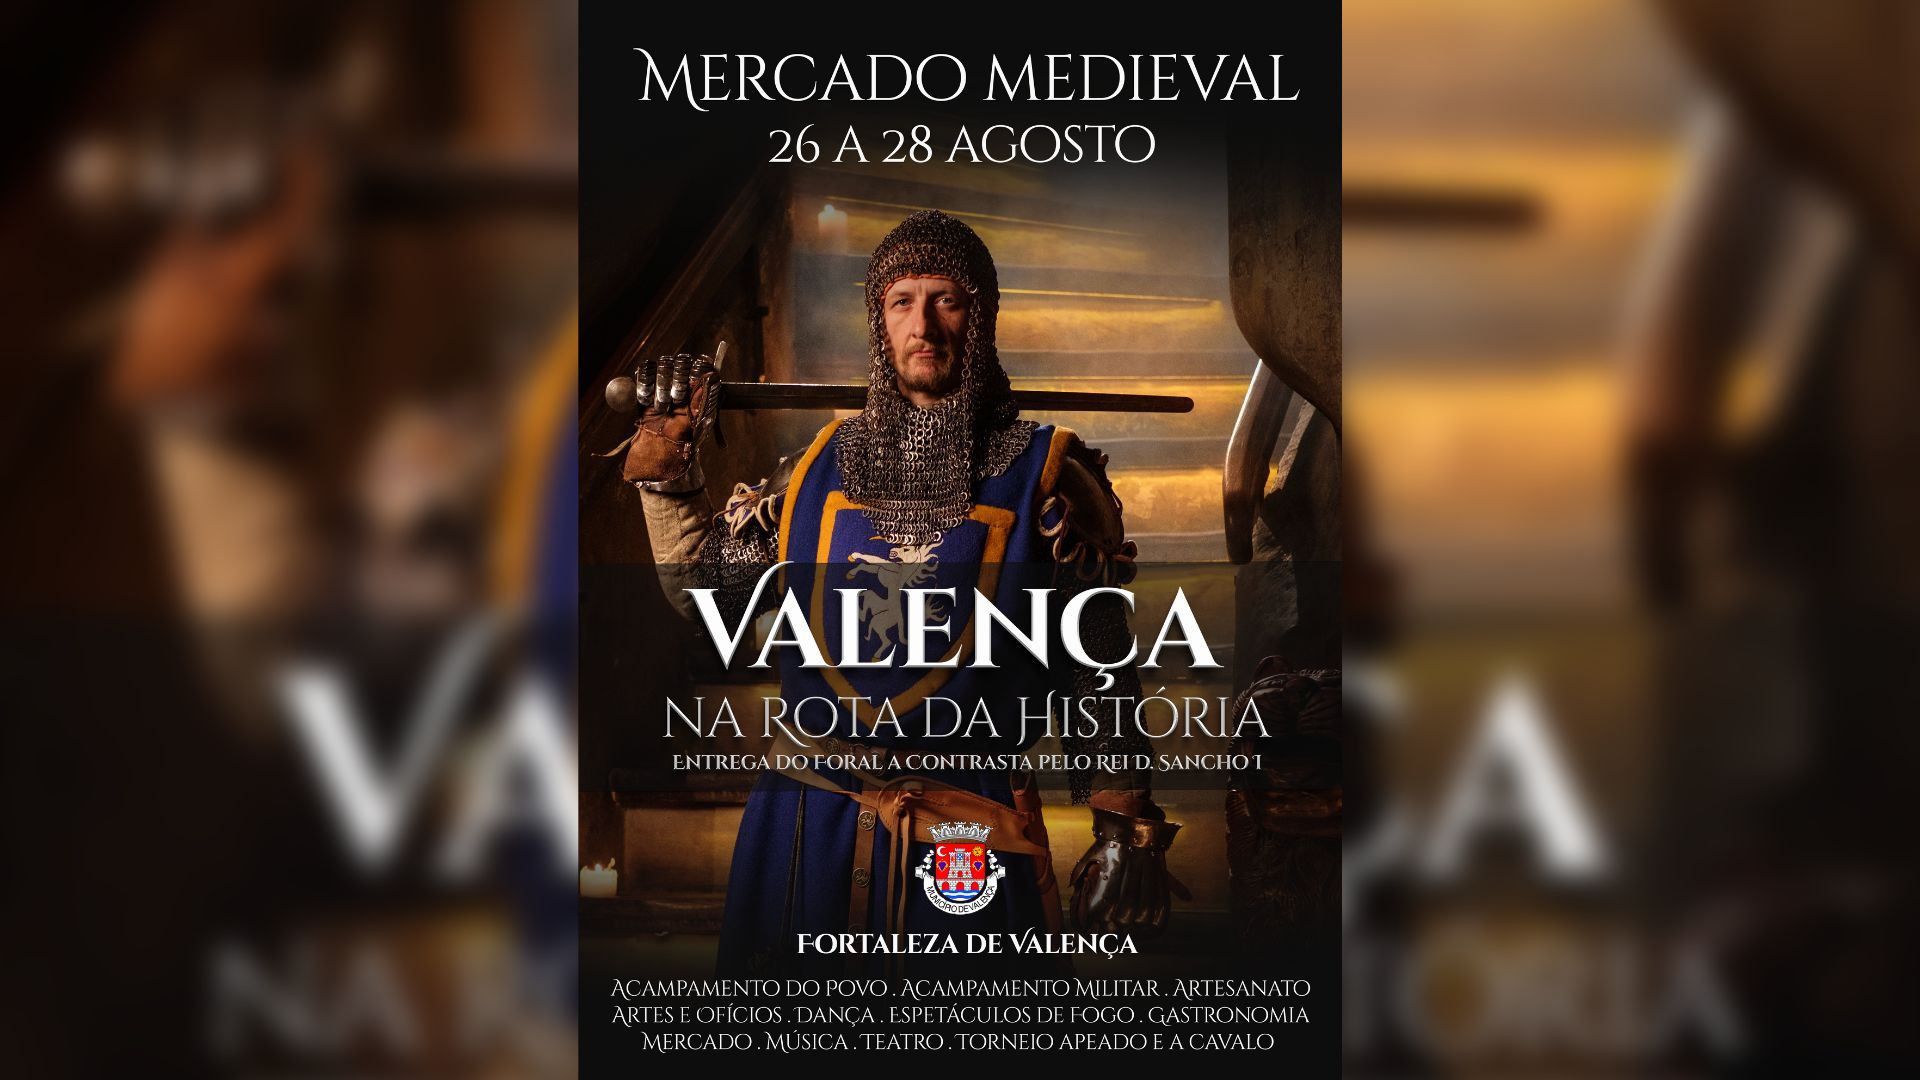 Cartel del evento difundido por el Ayuntamiento de Valença.